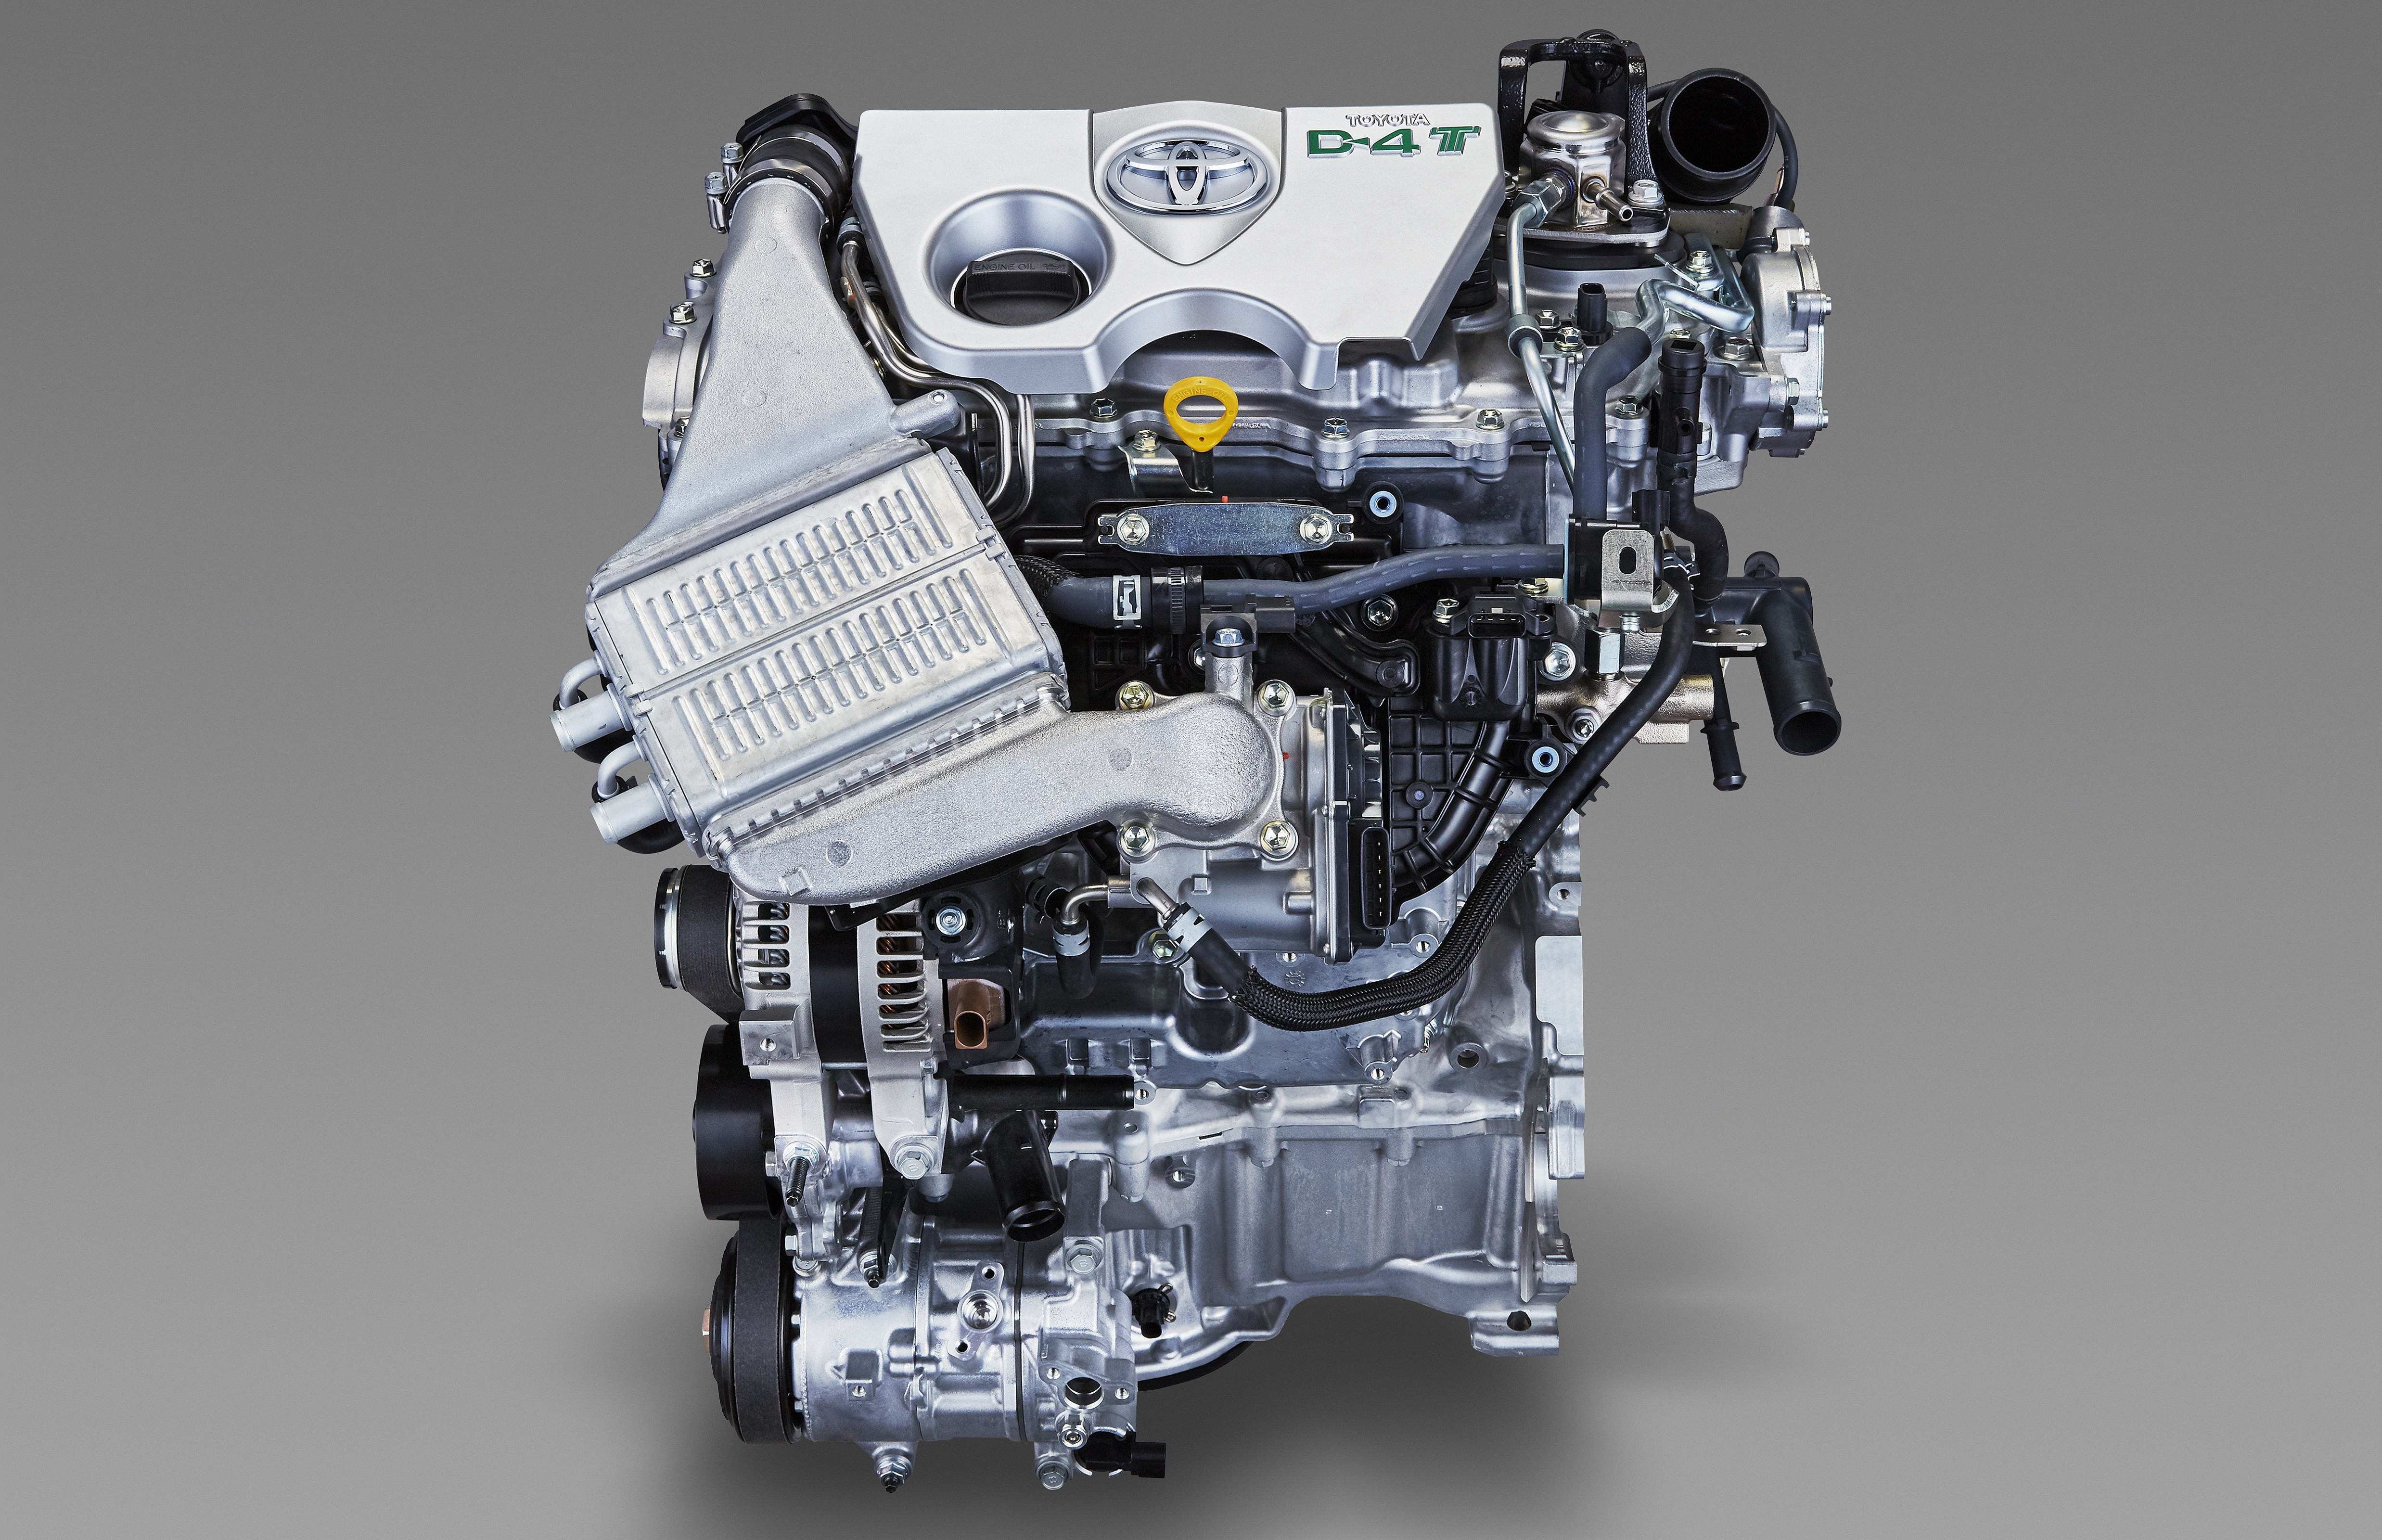 除了自然吸气发动机外,丰田的增压发动机虽然不像欧洲厂家那么出名